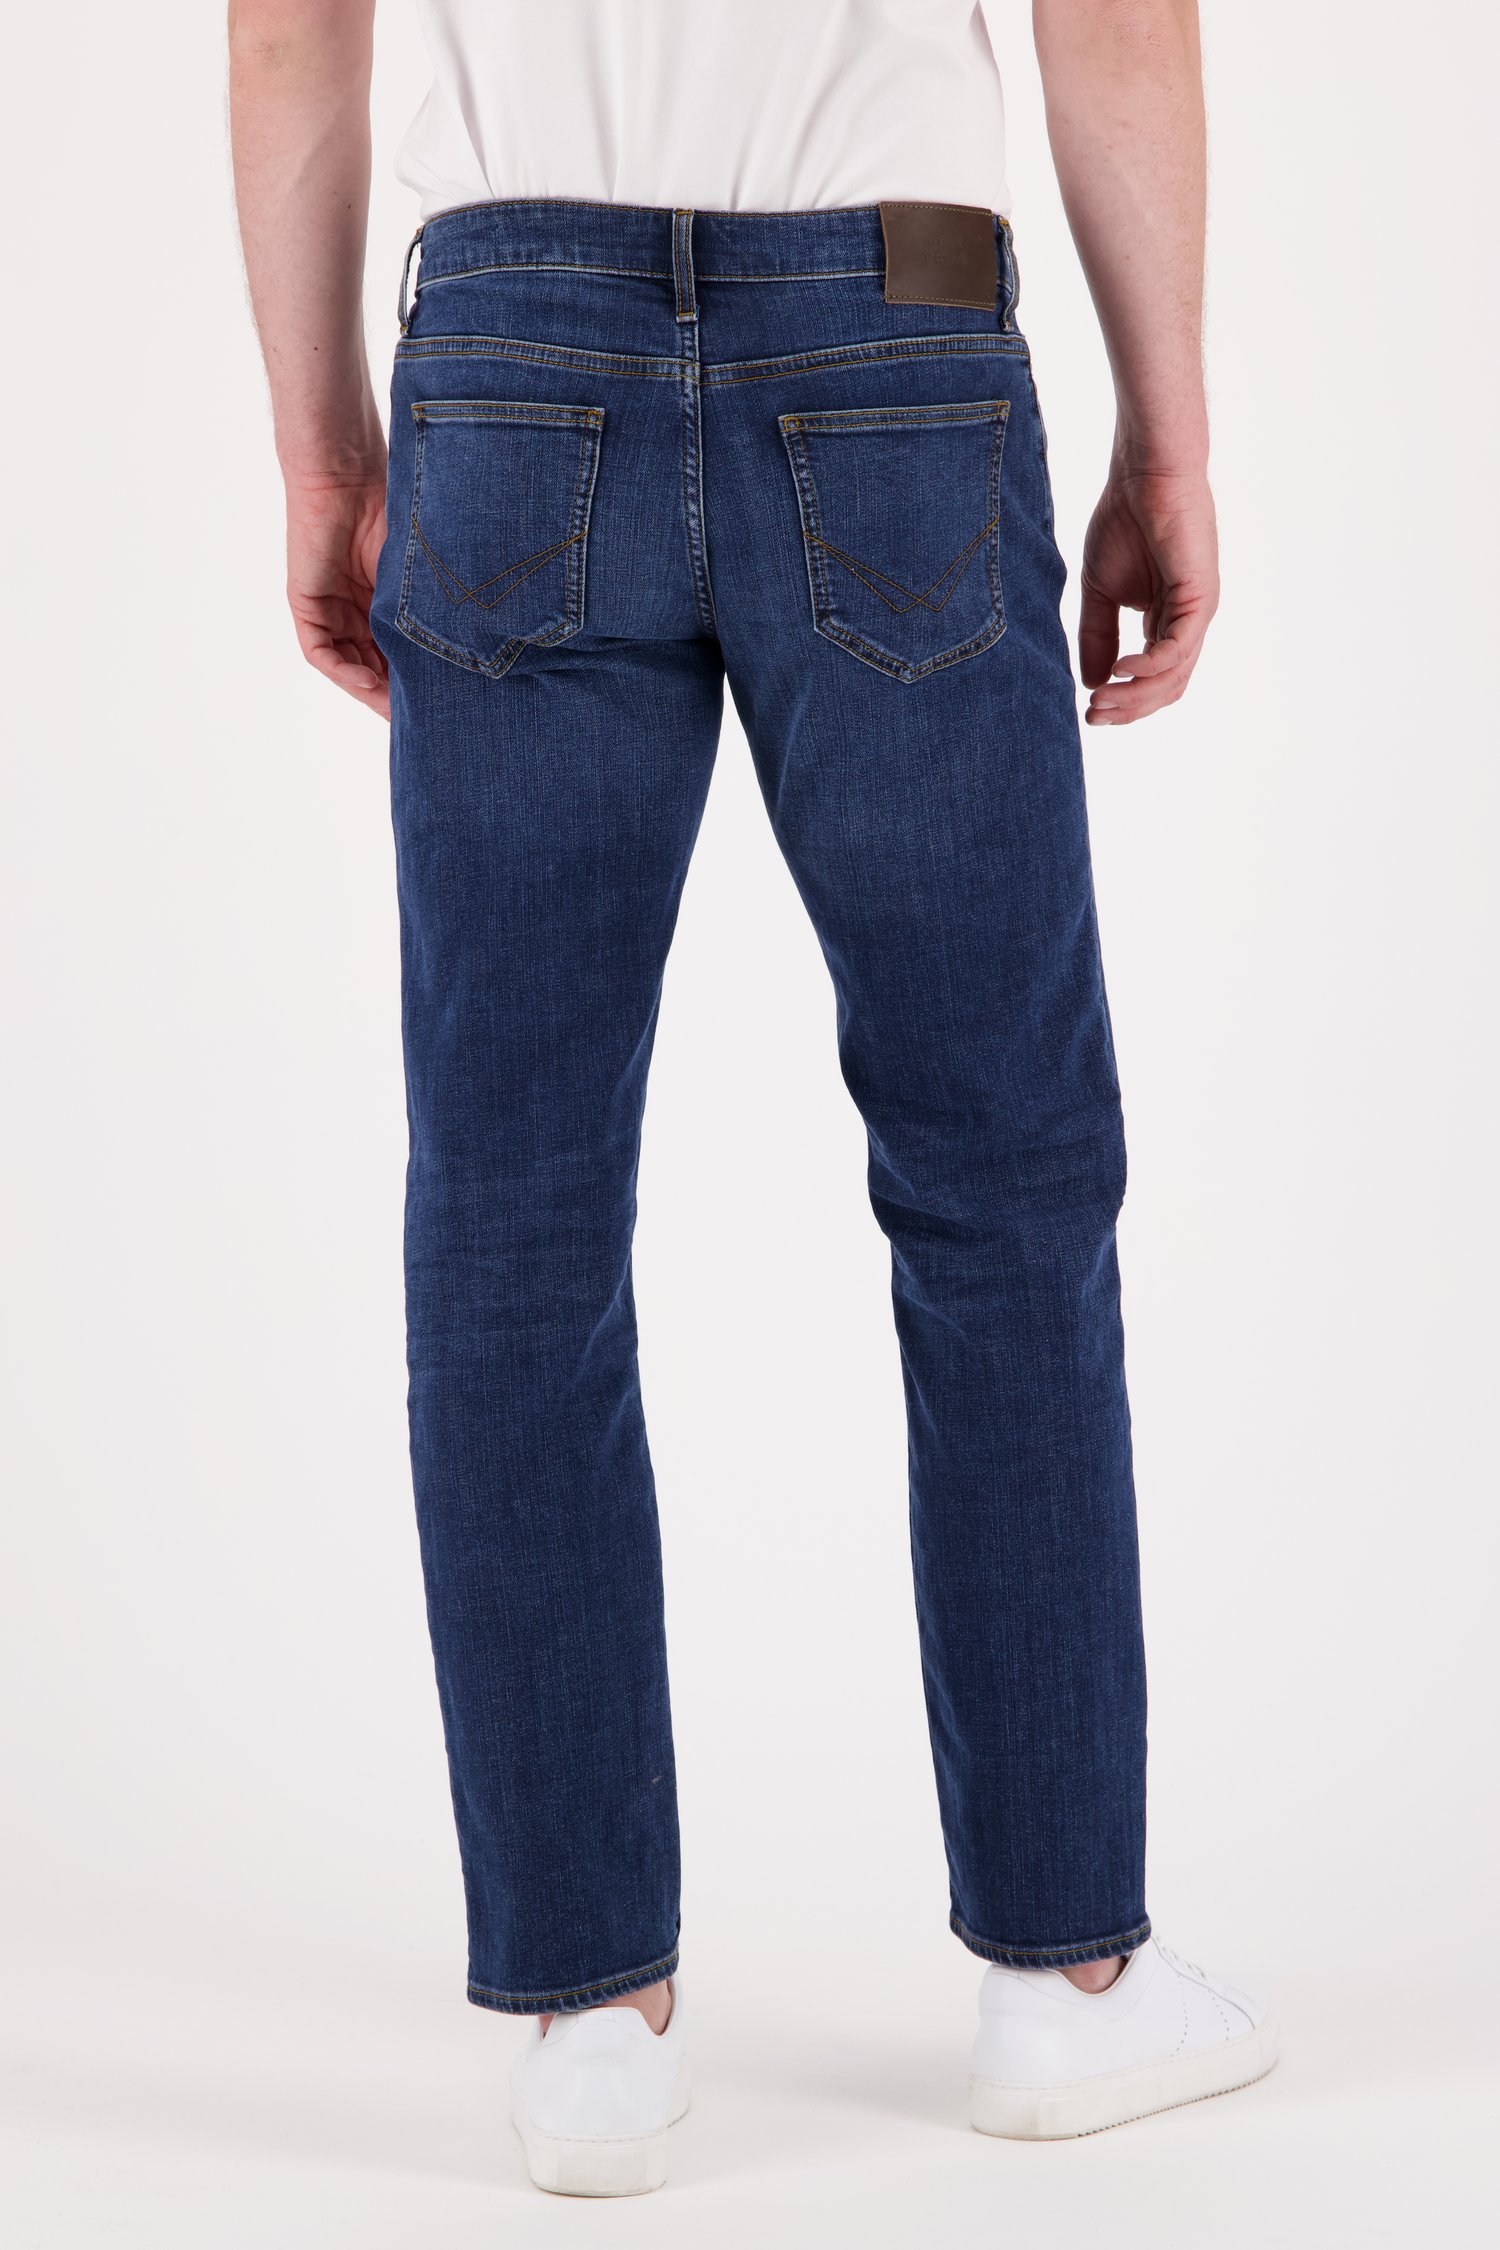 Middenblauwe jeans - Tom - regular fit - L34 van Liberty Island Denim voor Heren